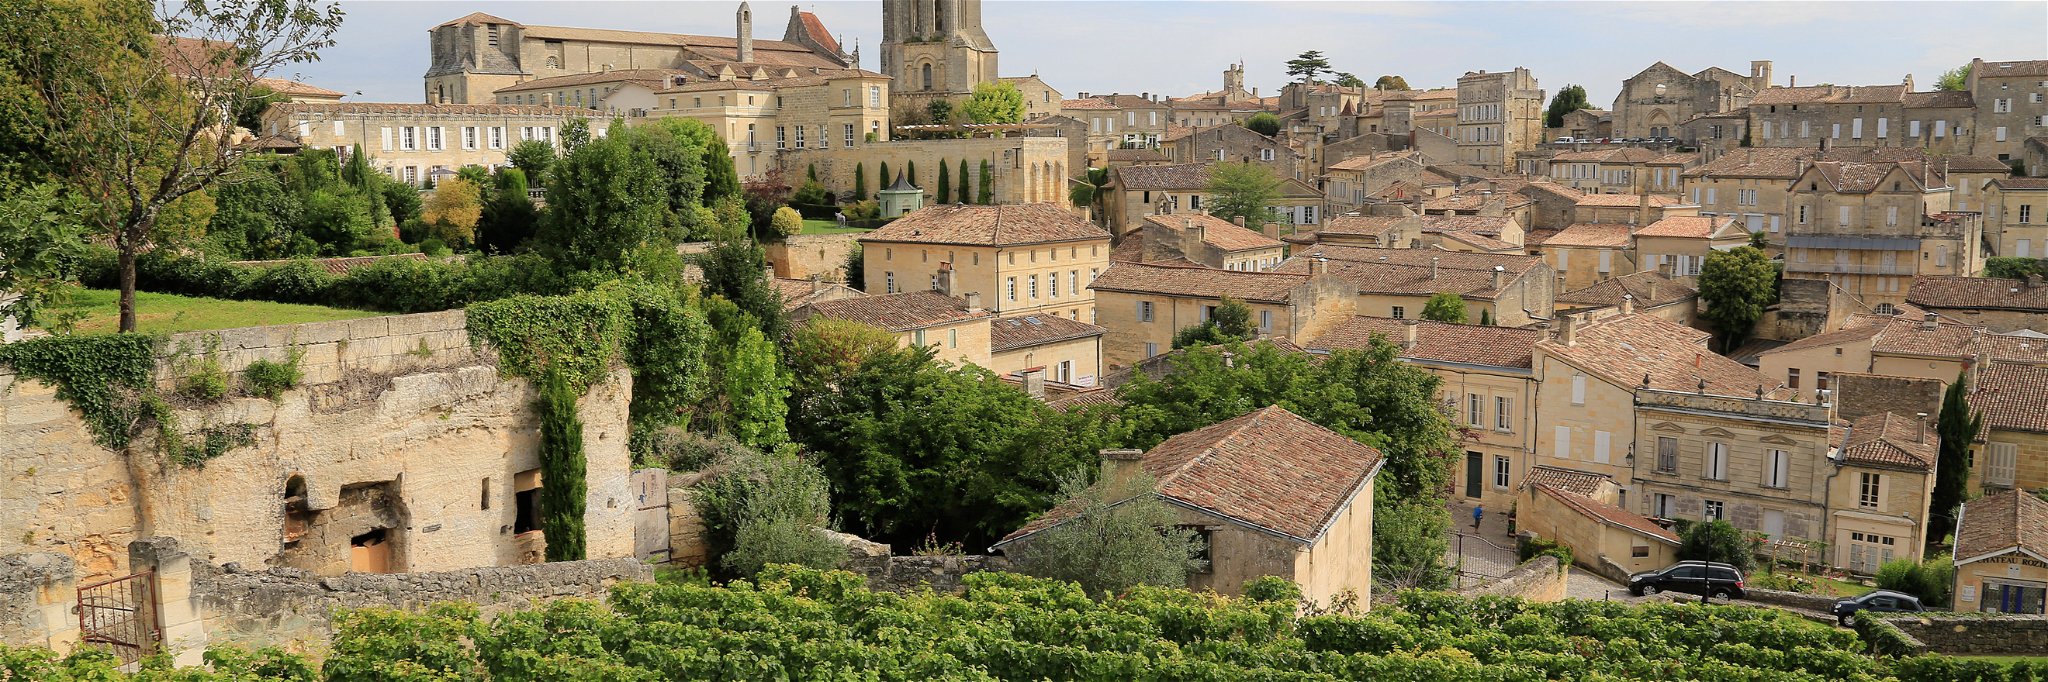 View to the village of Saint-Émilion amidst the vines.&nbsp;